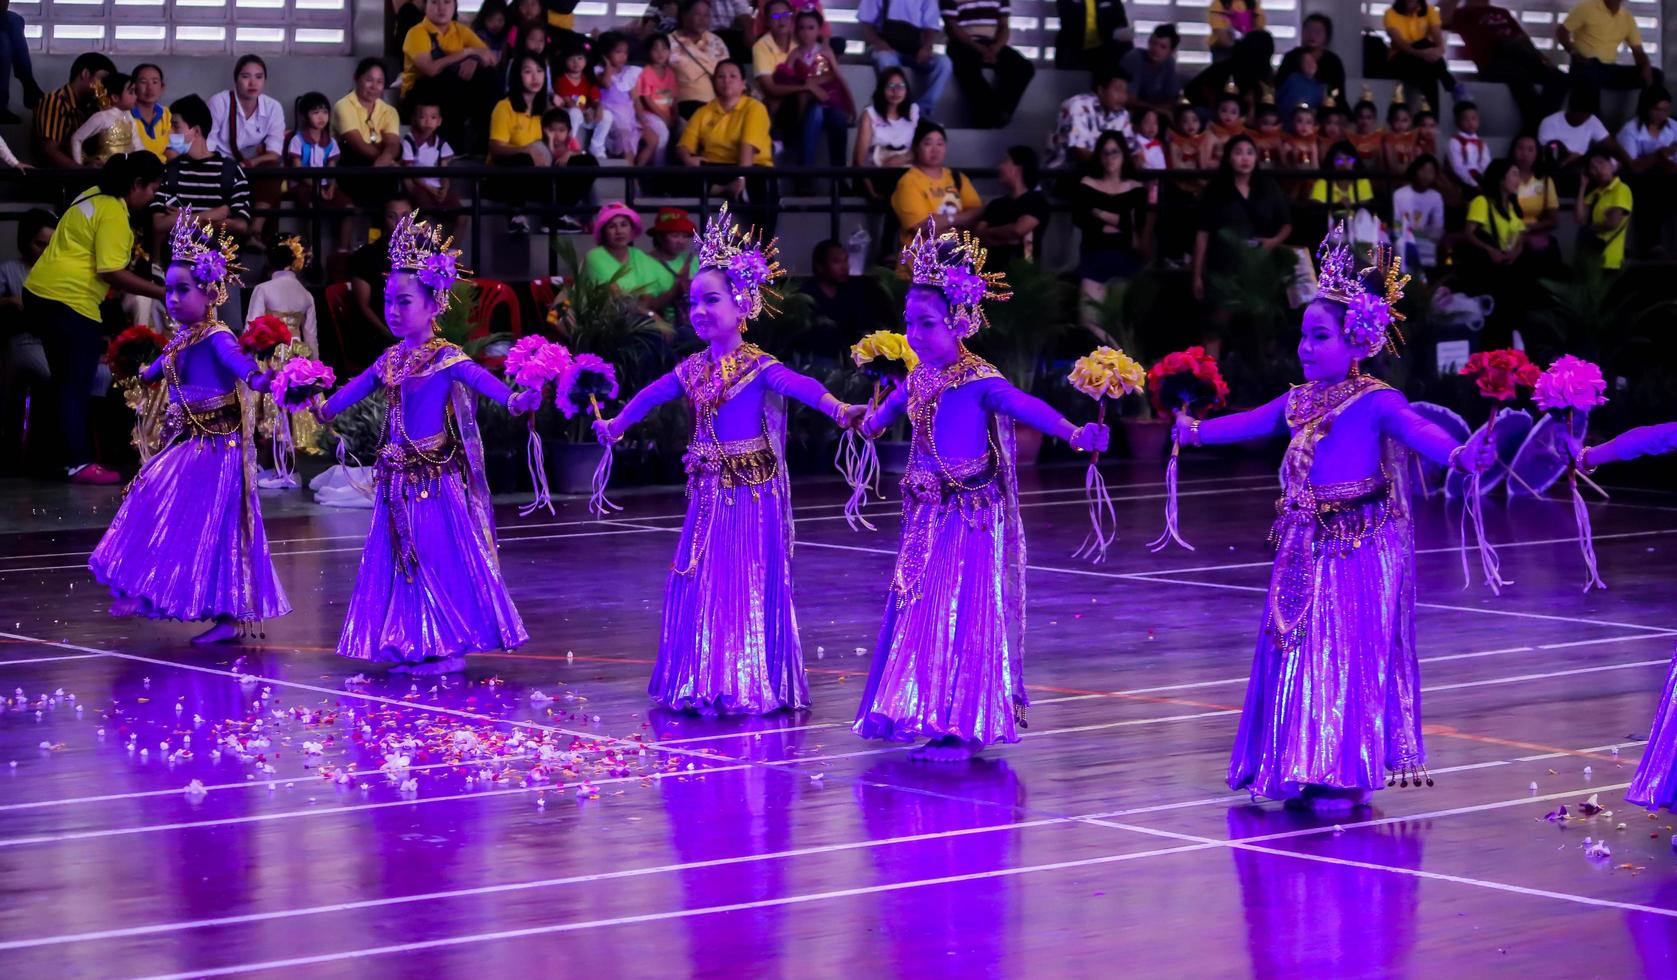 Thaïlande, Thaïlande -26 juin 2019 cinq petits enfants dansent thaïlandais le 26 juin 2019 photo